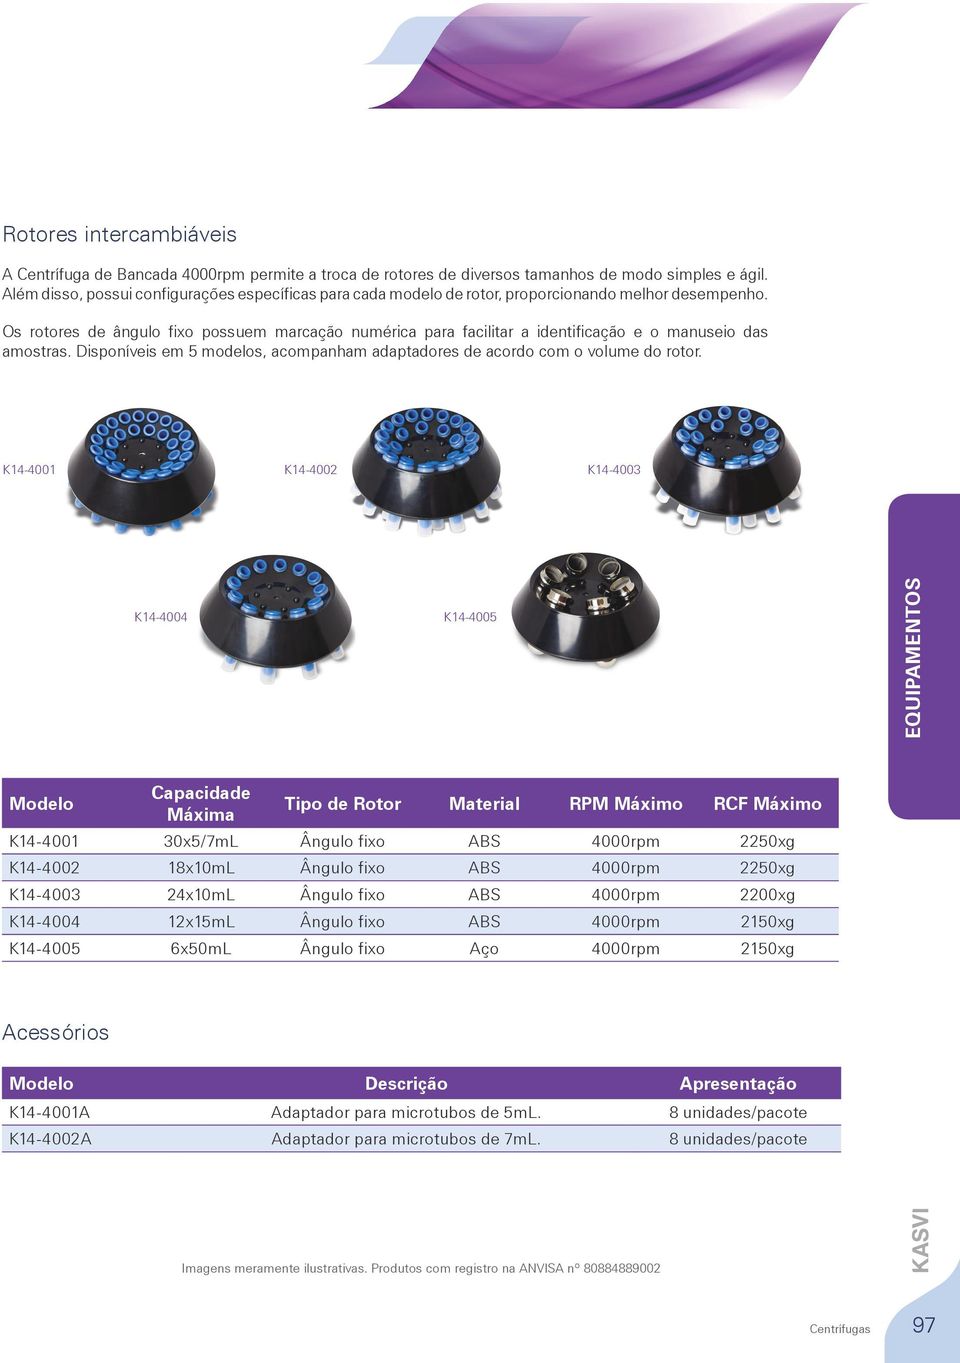 Os rotores de ângulo fixo possuem marcação numérica para facilitar a identificação e o manuseio das amostras. Disponíveis em 5 modelos, acompanham adaptadores de acordo com o volume do rotor.